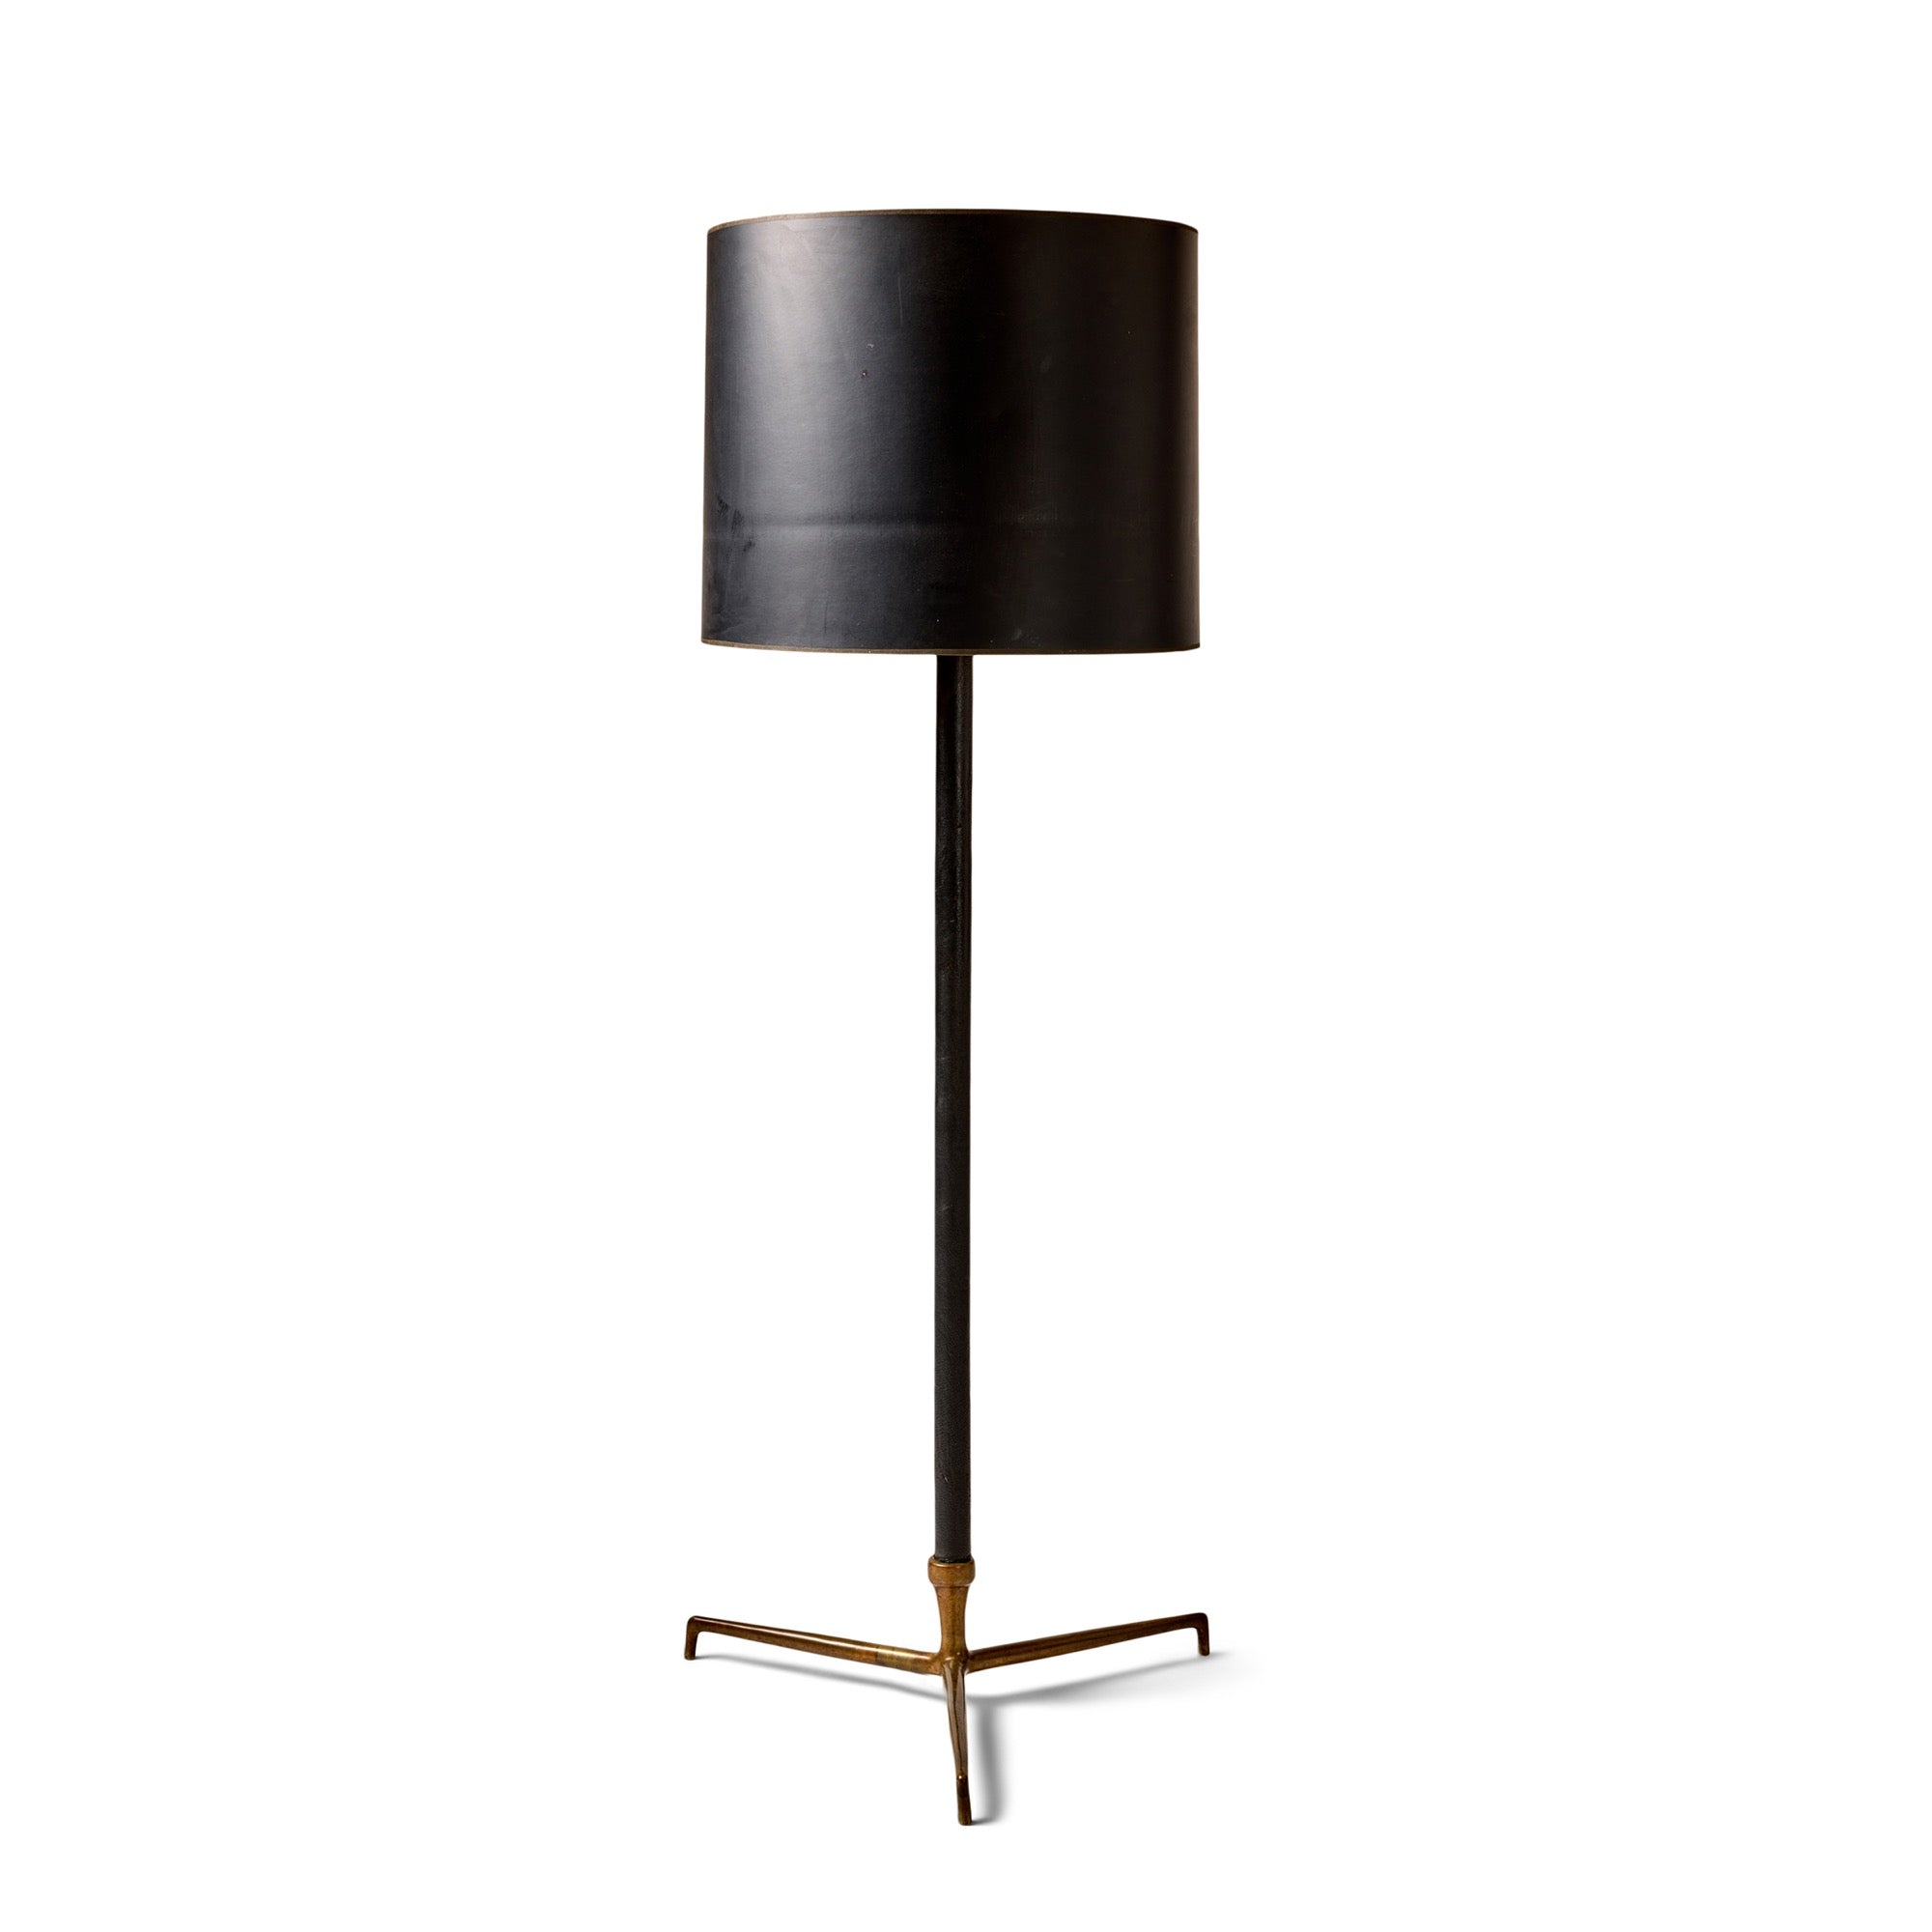 Italian Modernist Floor Lamp by Angelo Lelli for Arredoluce